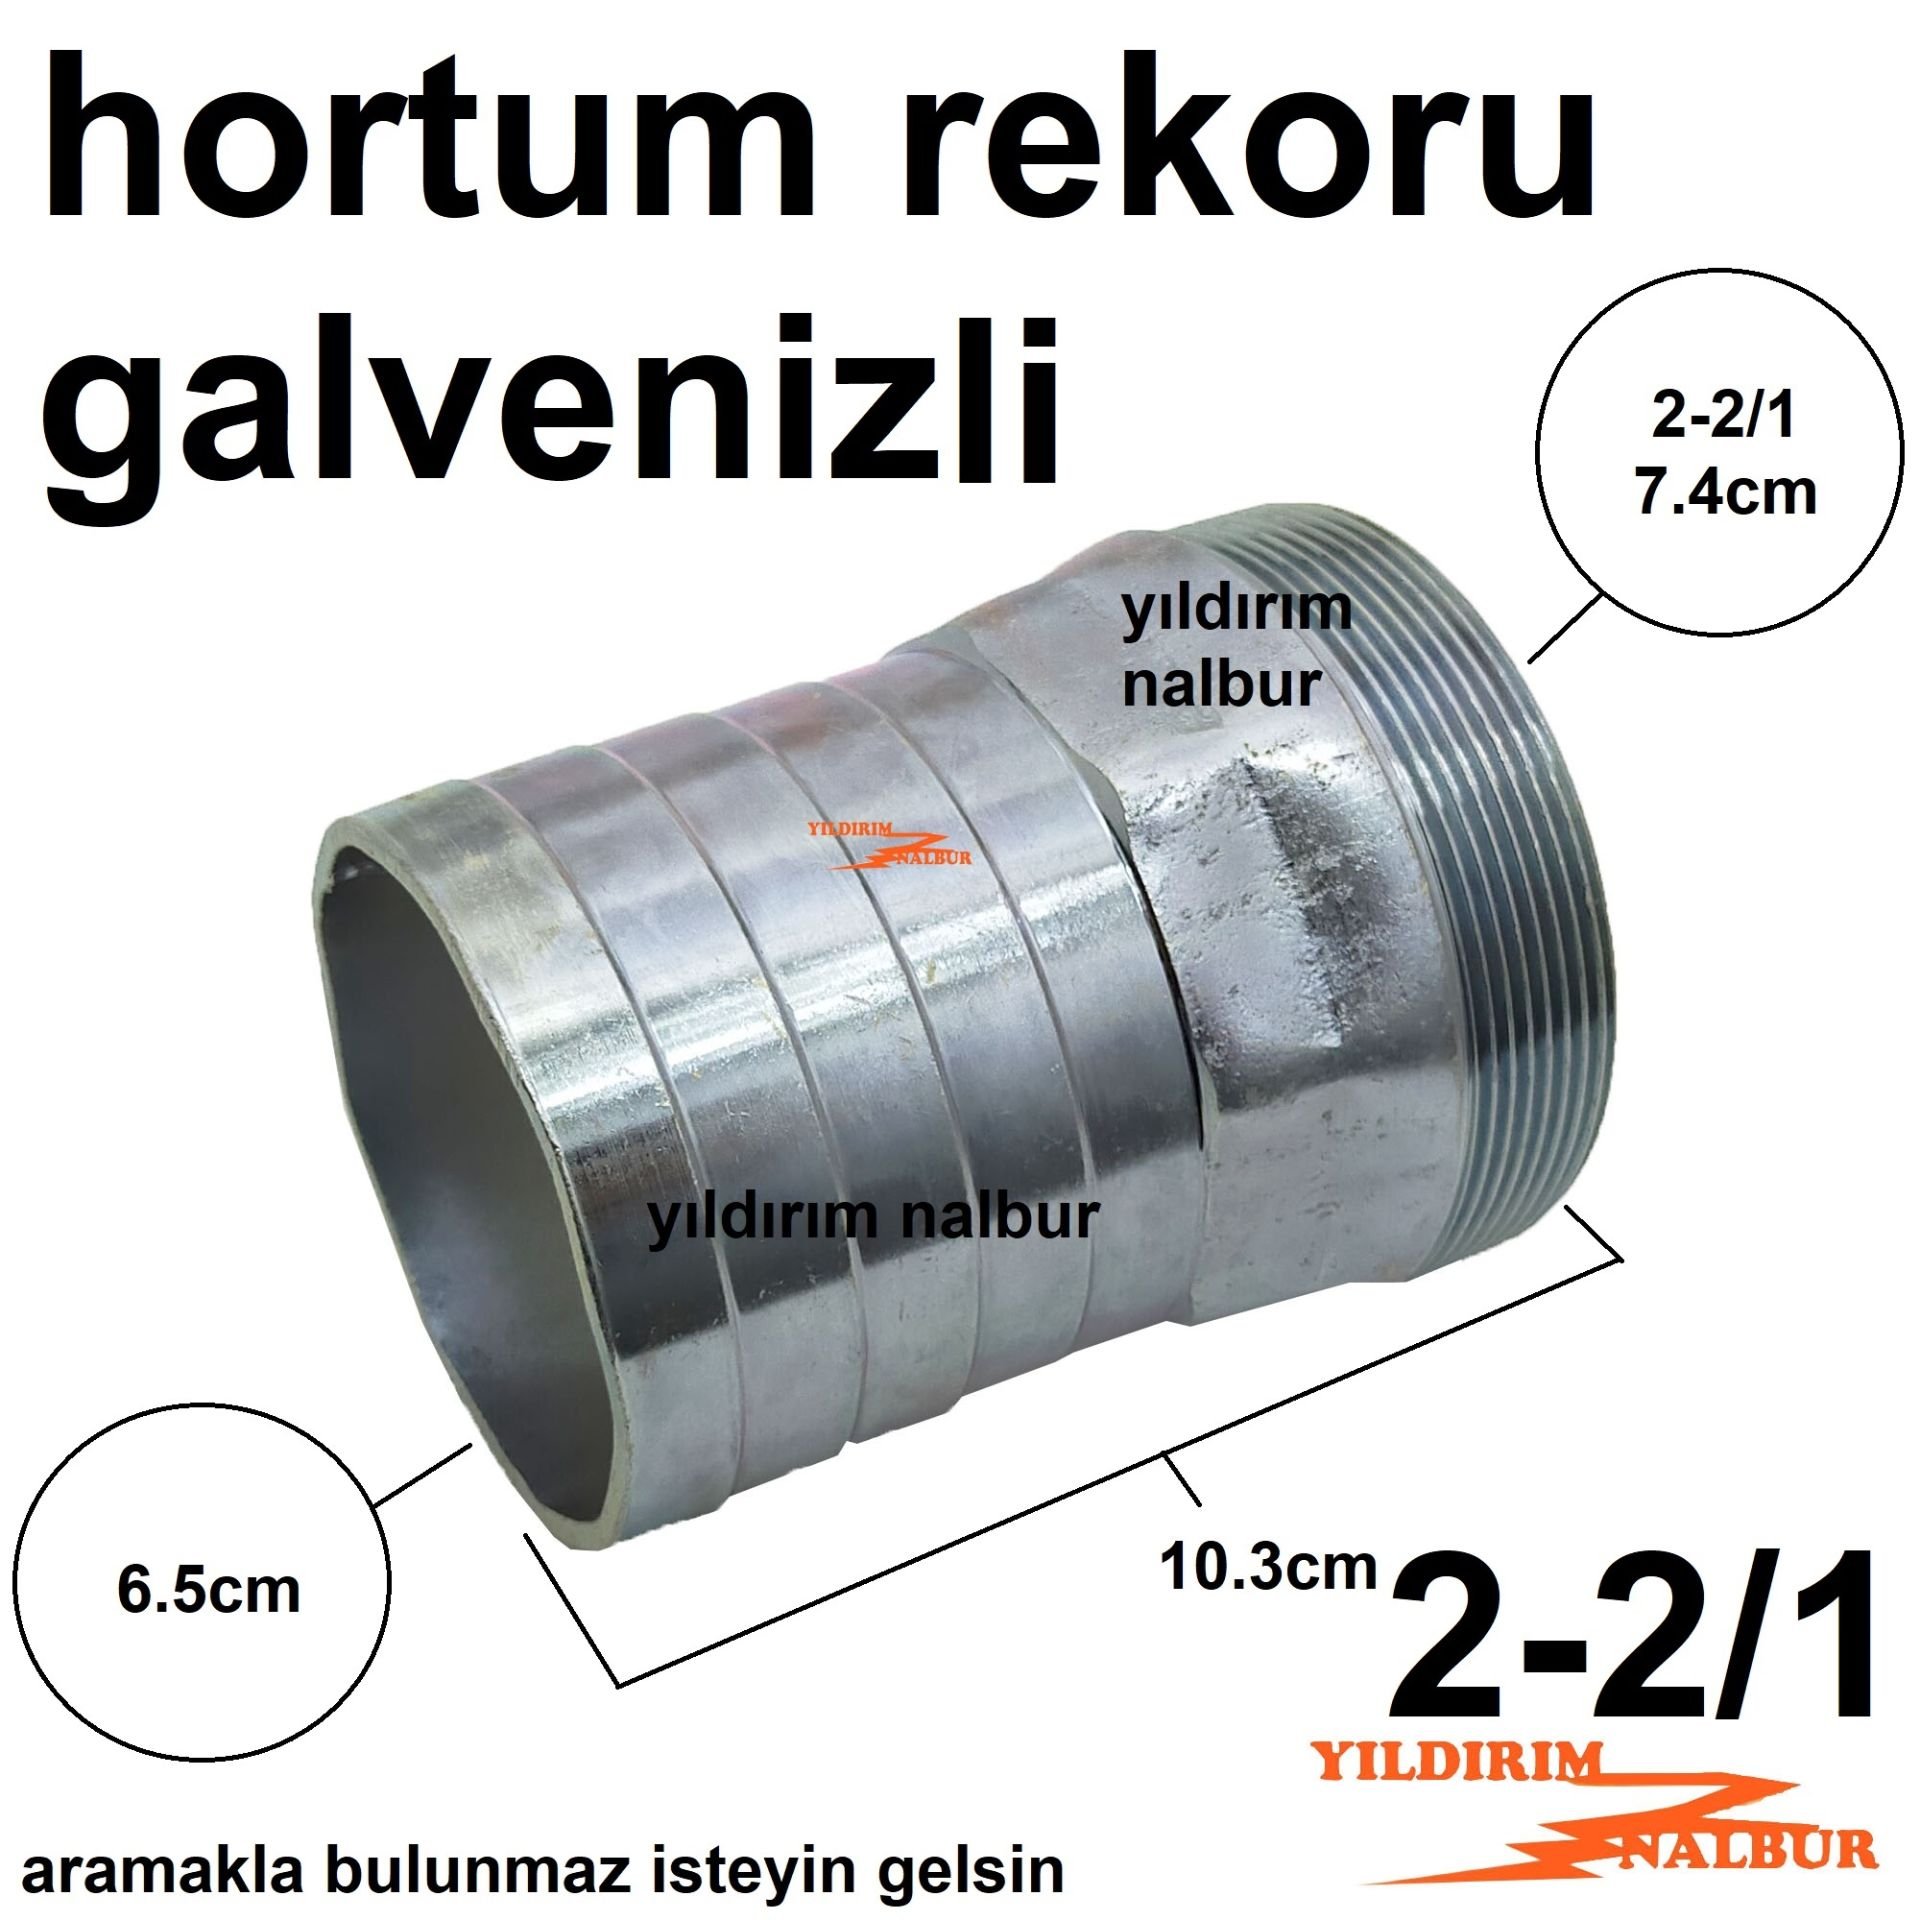 GALVENİZLİ HORTUM REKORU 2-2/1  SU DEPOSU REKORU 2.5 PARMAK